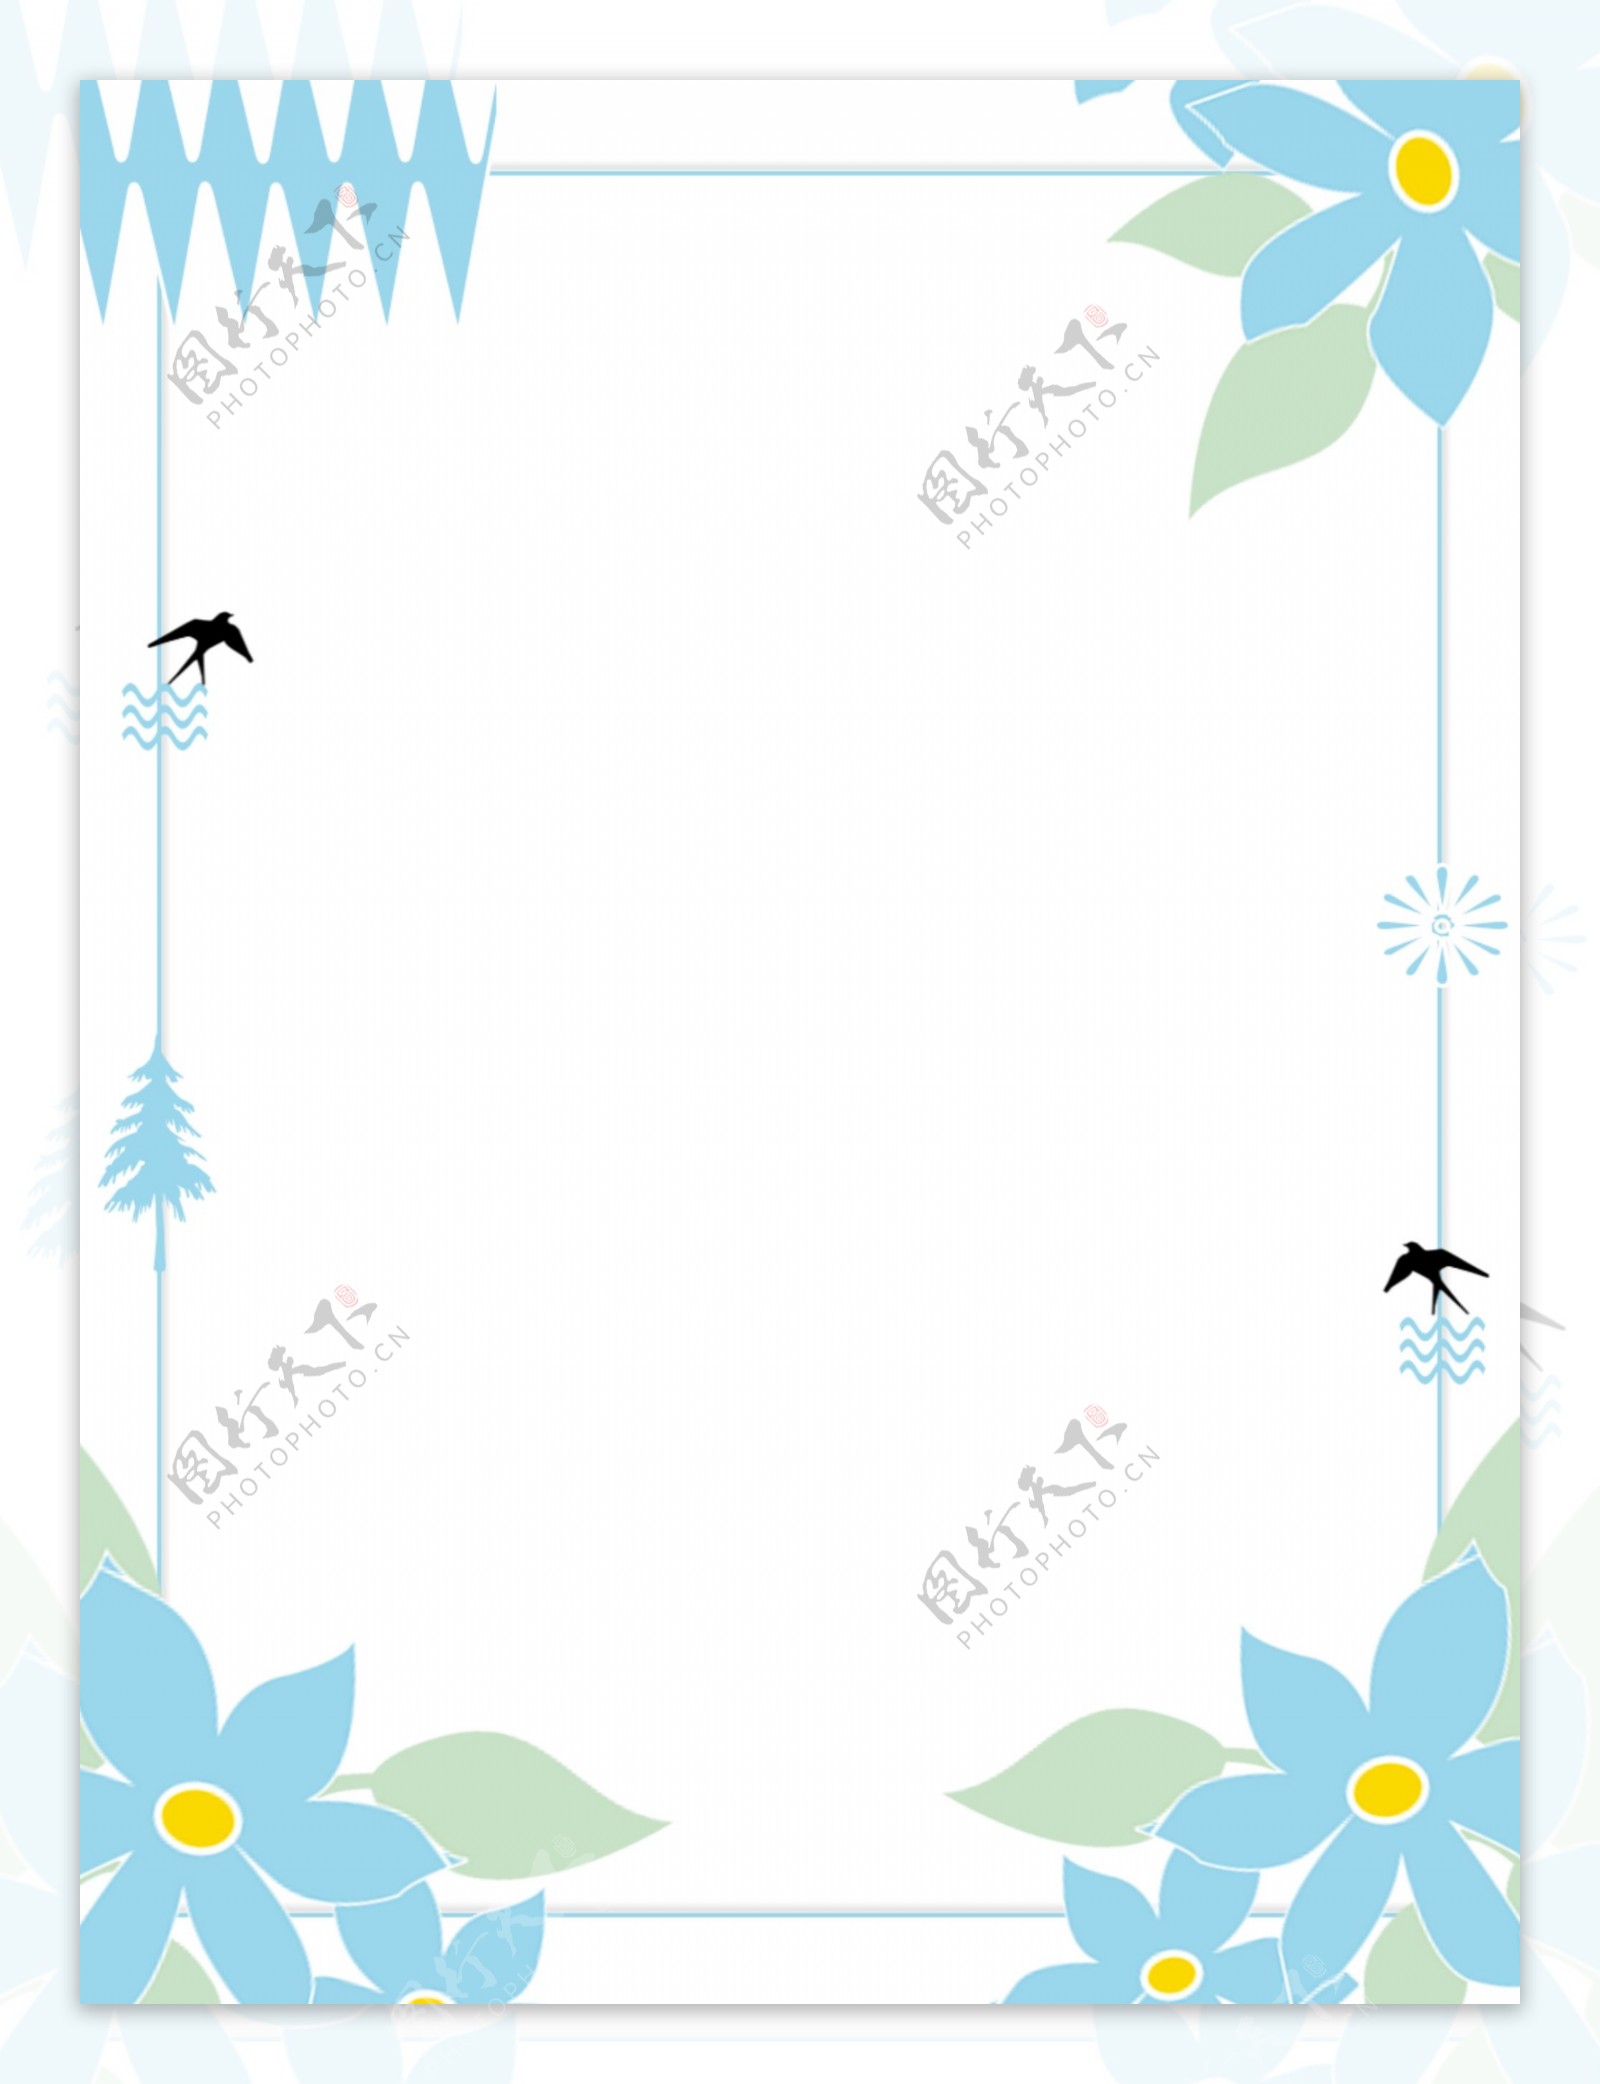 素雅文艺植物花夲边框背景